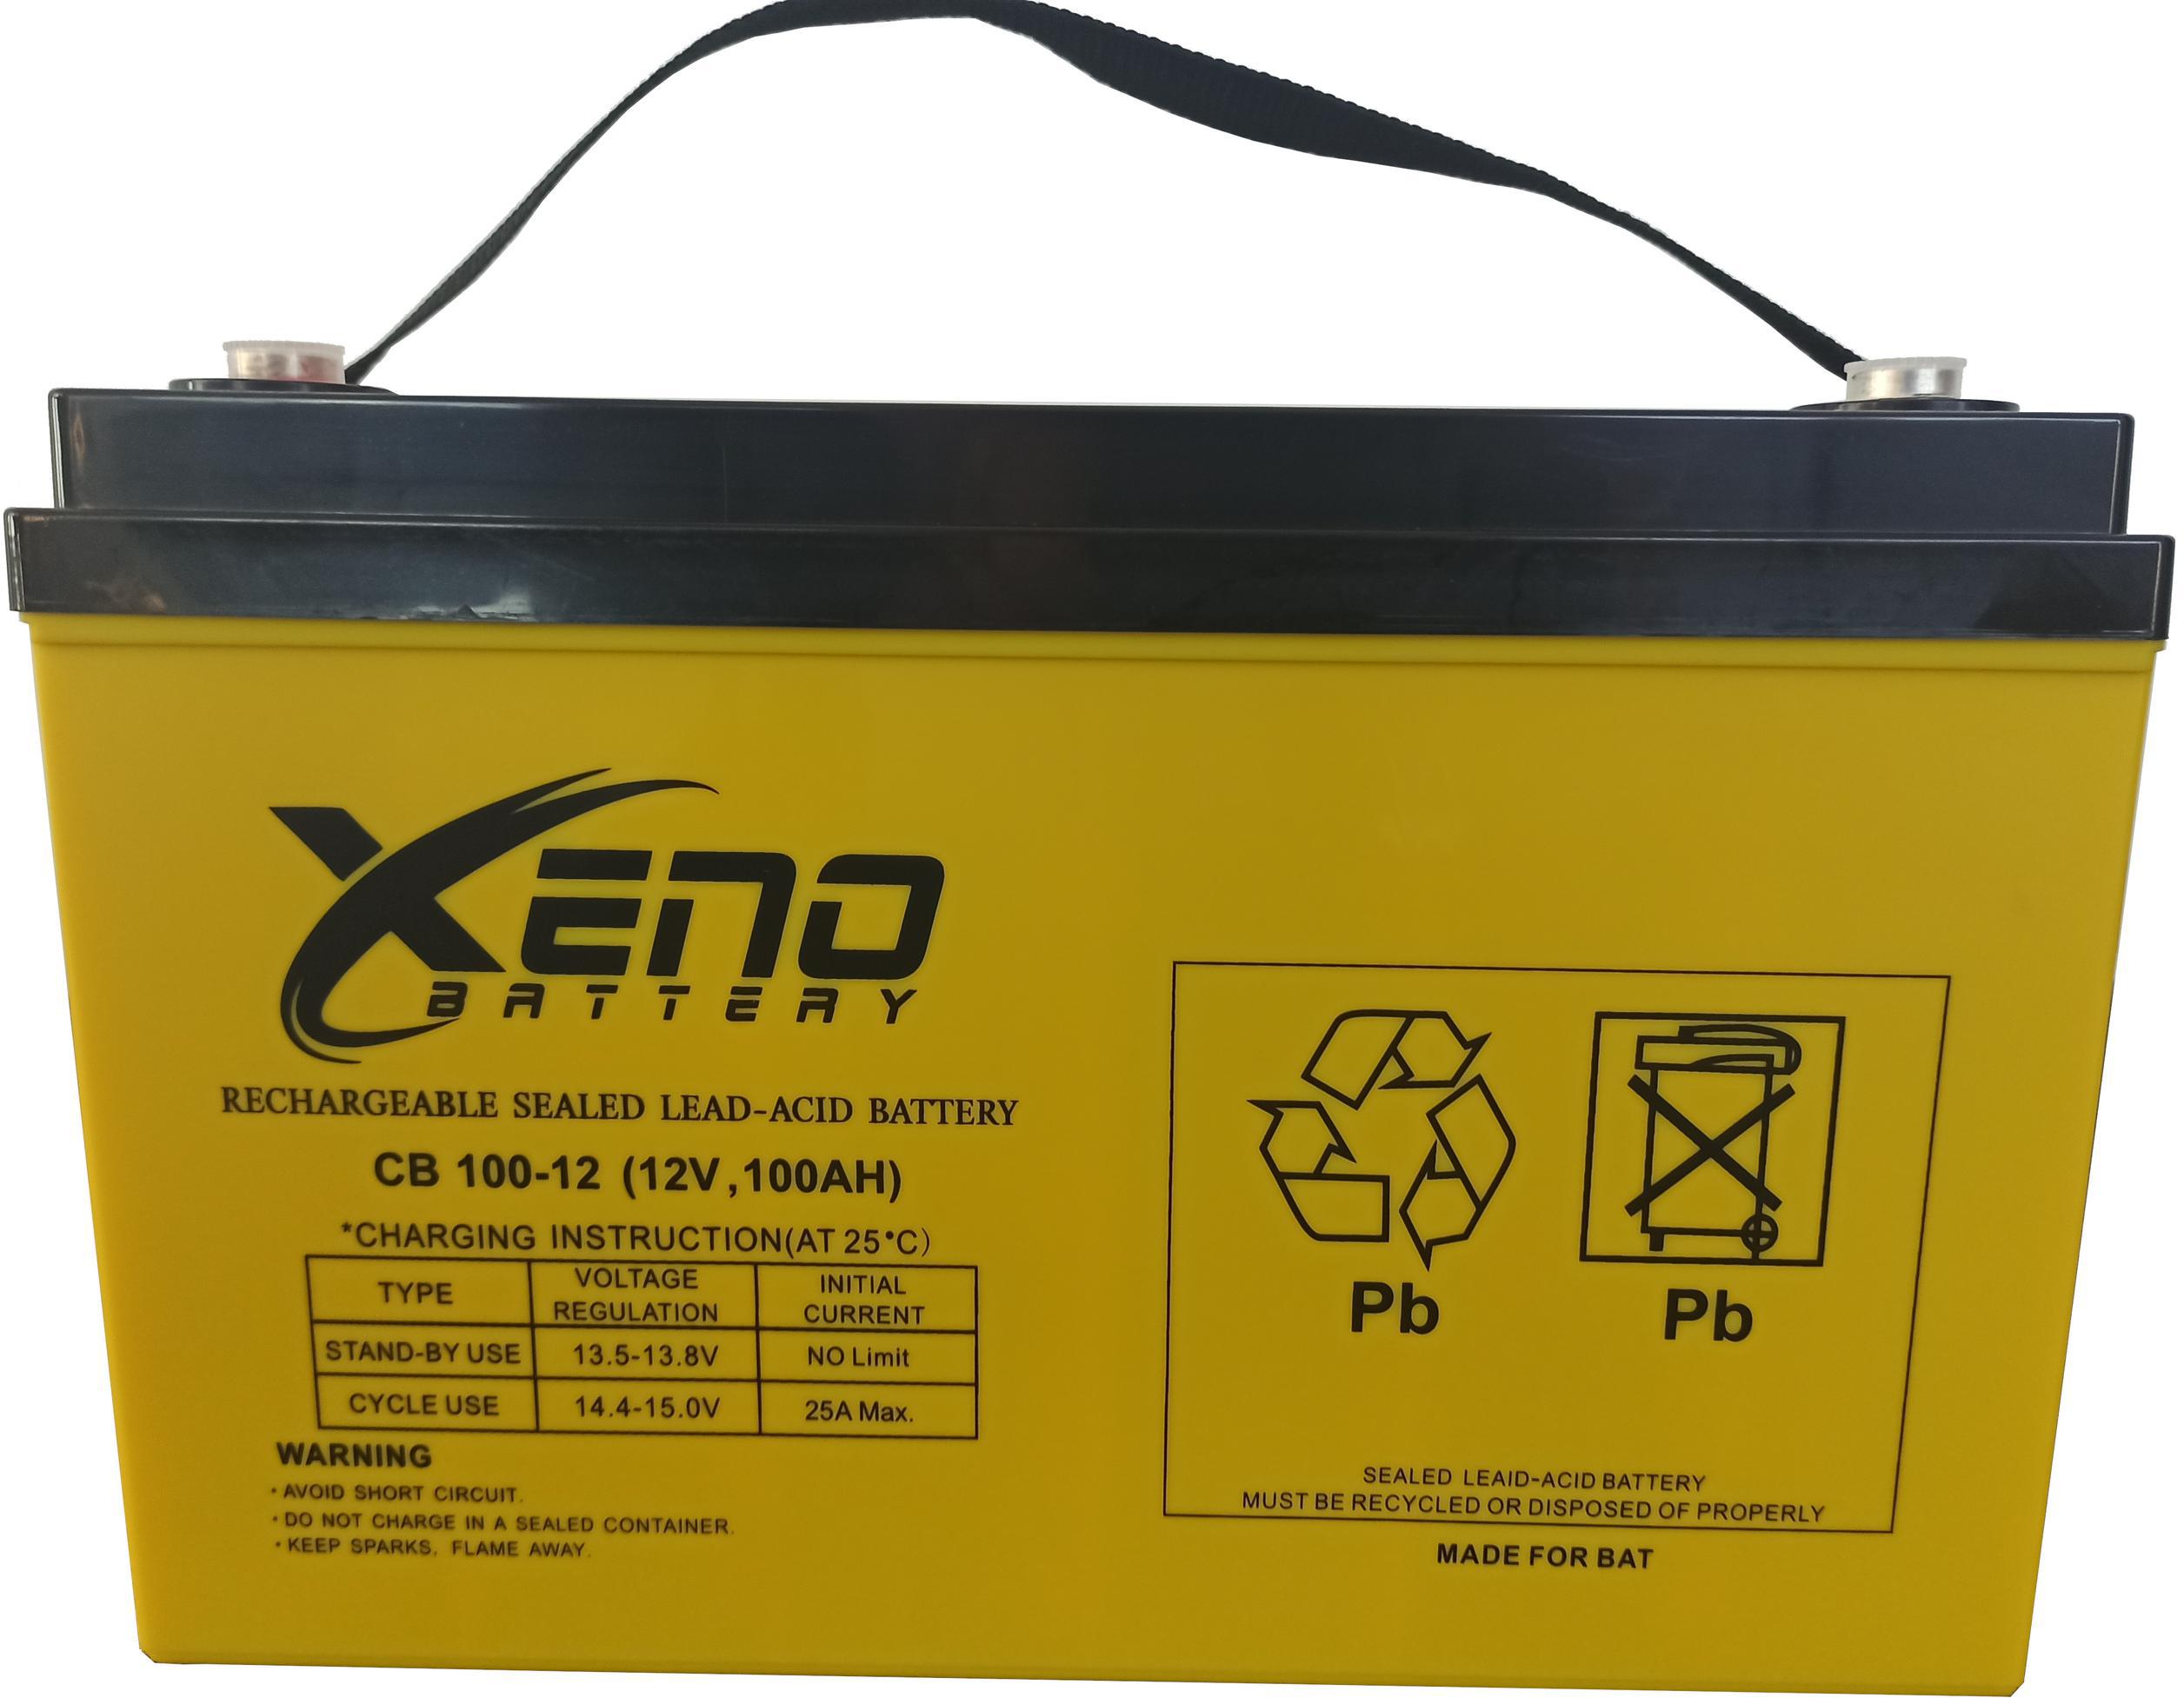 Magazynuj i dostarczaj energię do swoich urządzeń dzięki możliwościom akumulatora BAT Xeno 12V 100Ah!